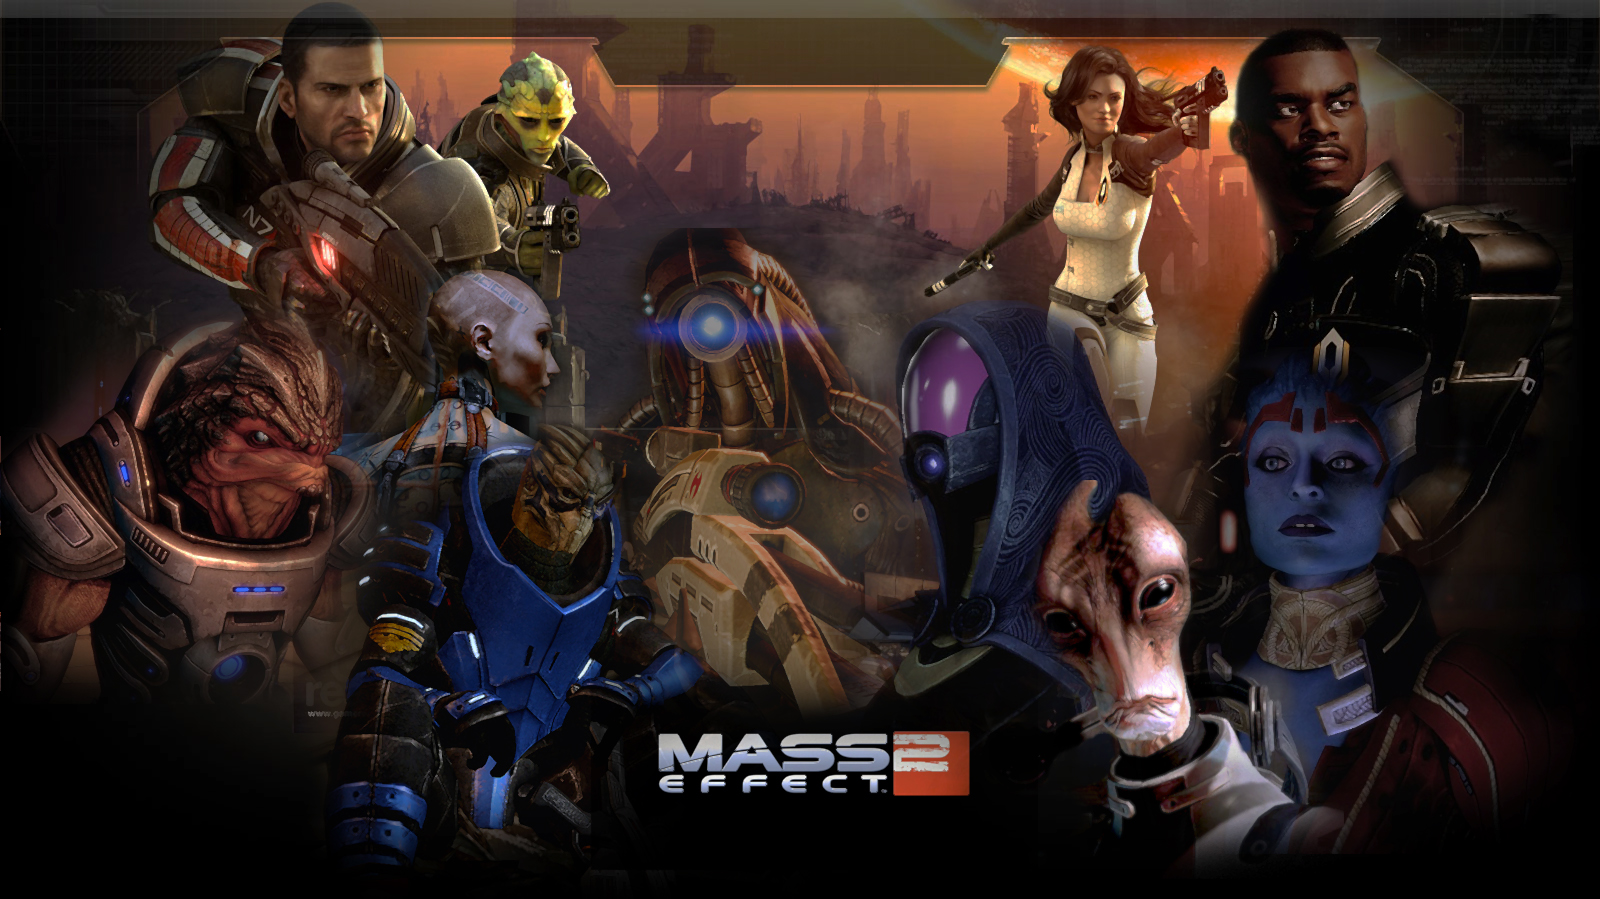 Mass_Effect_2_Wallpaper_by_zeebow14